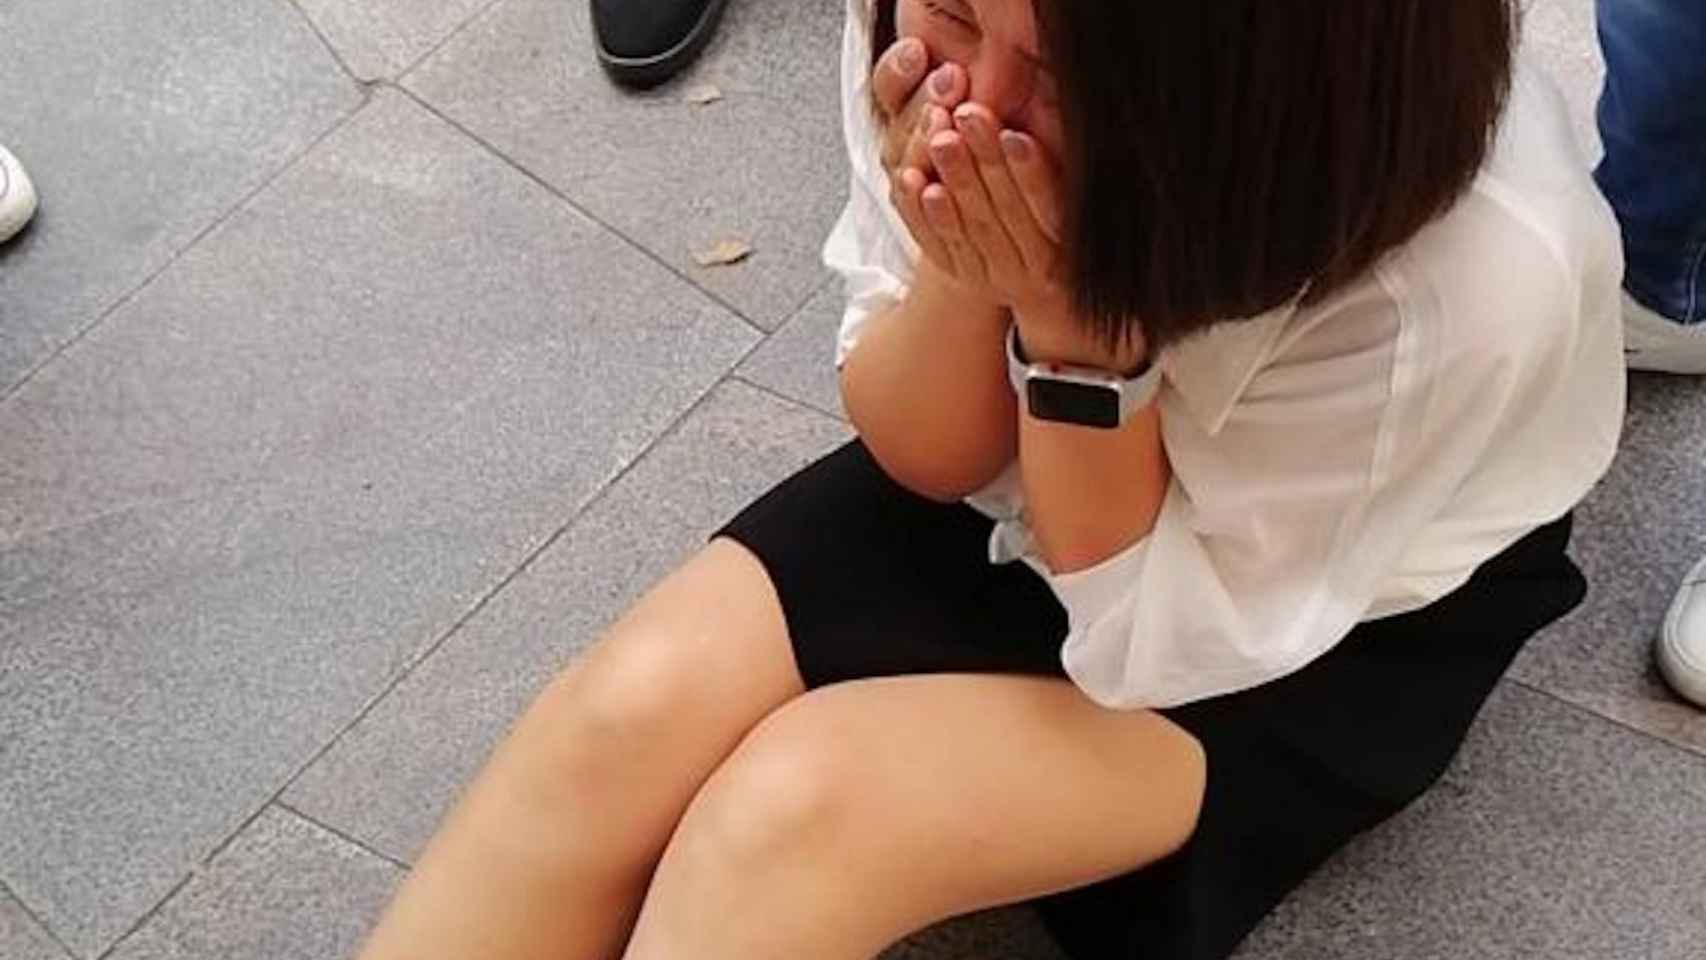 Una turista asiática tendida en el suelo tras sufrir un robo en Barcelona / MA